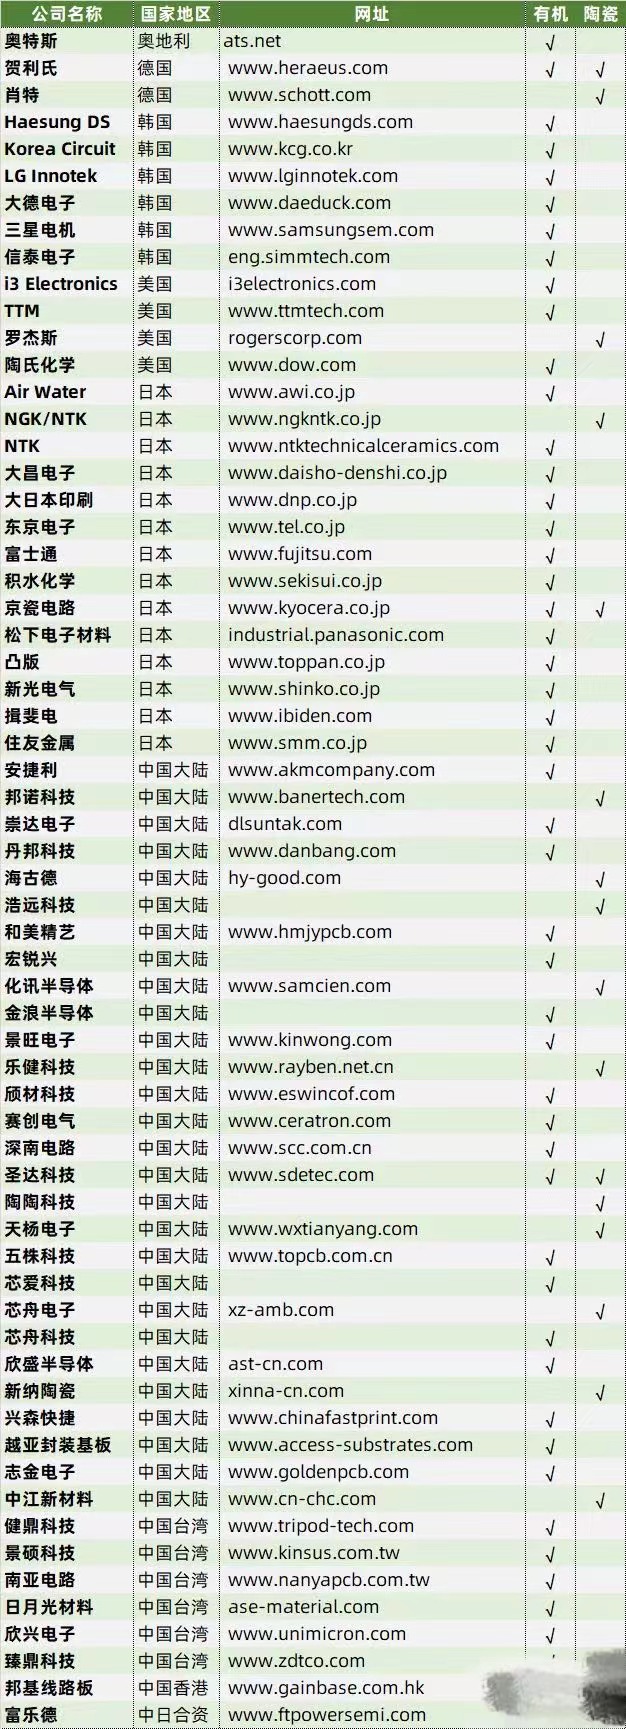 全球封装基板供应商列表